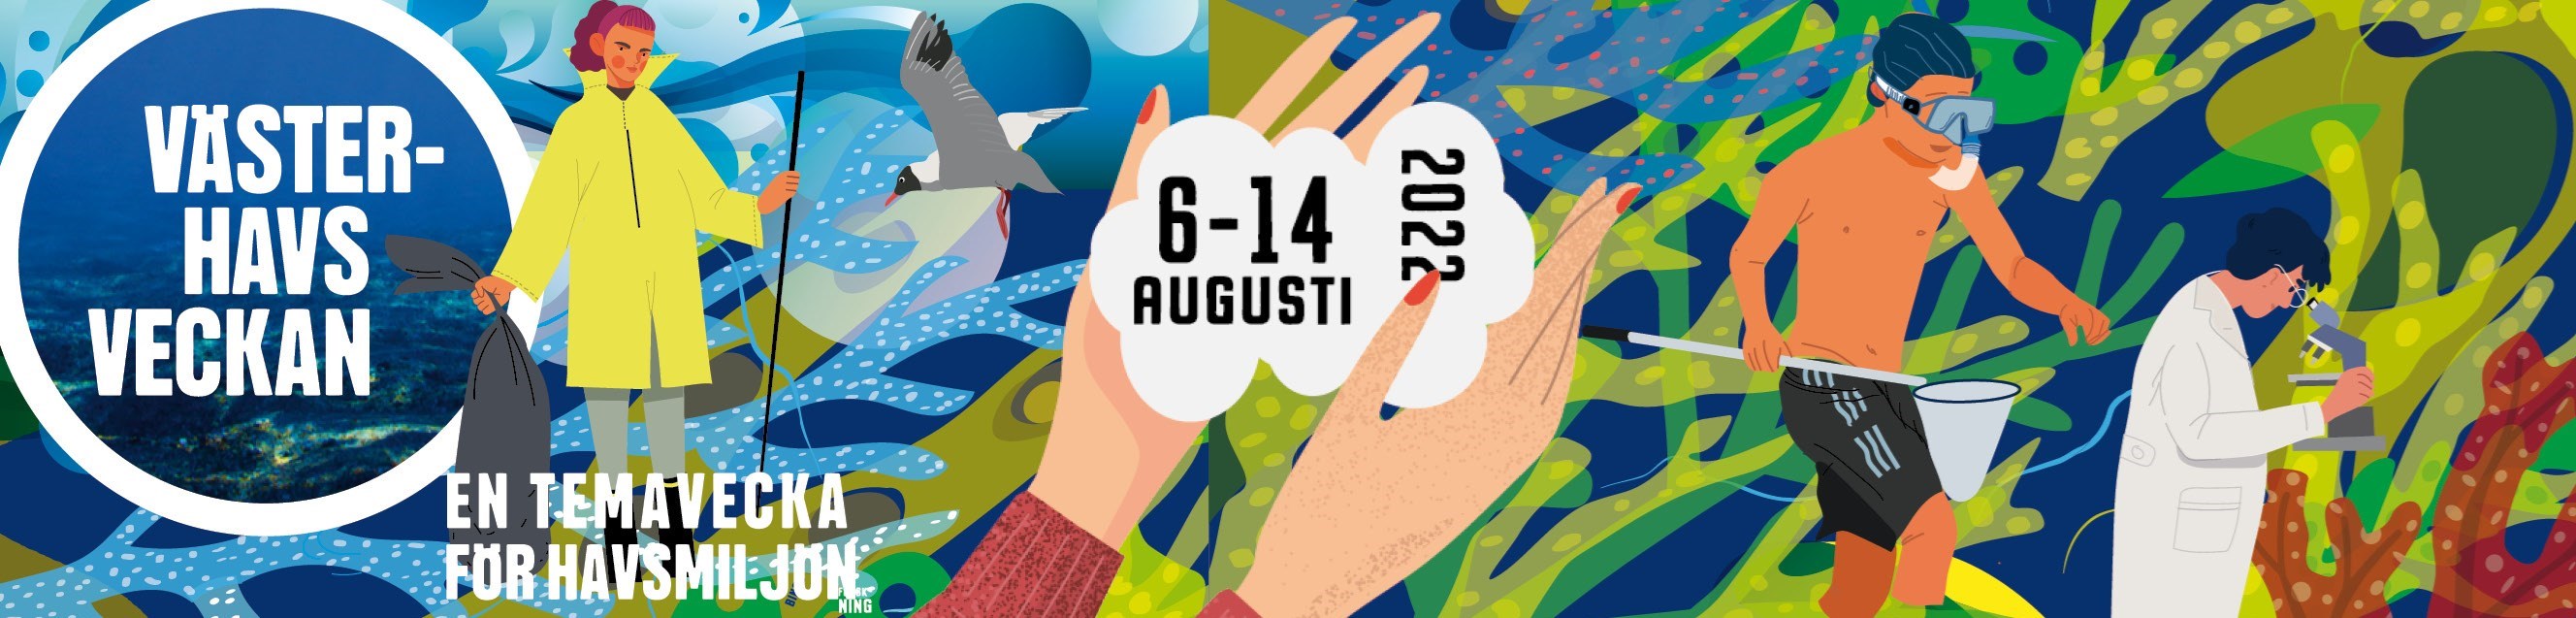 Västerhavsveckan, en temavecka för havsmiljön, 6-14 augusti 2022